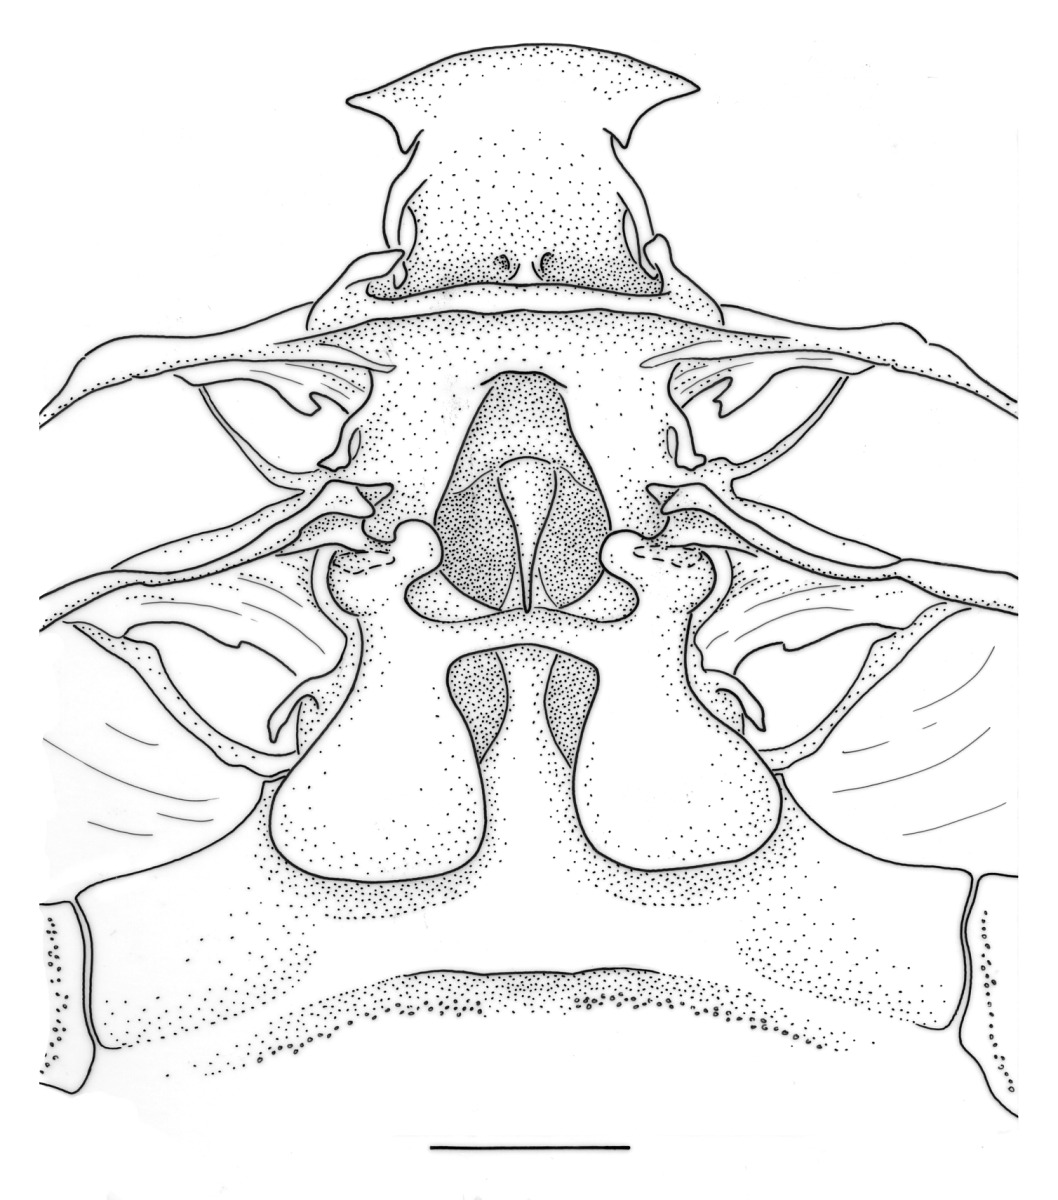 Artemesia longinaris image